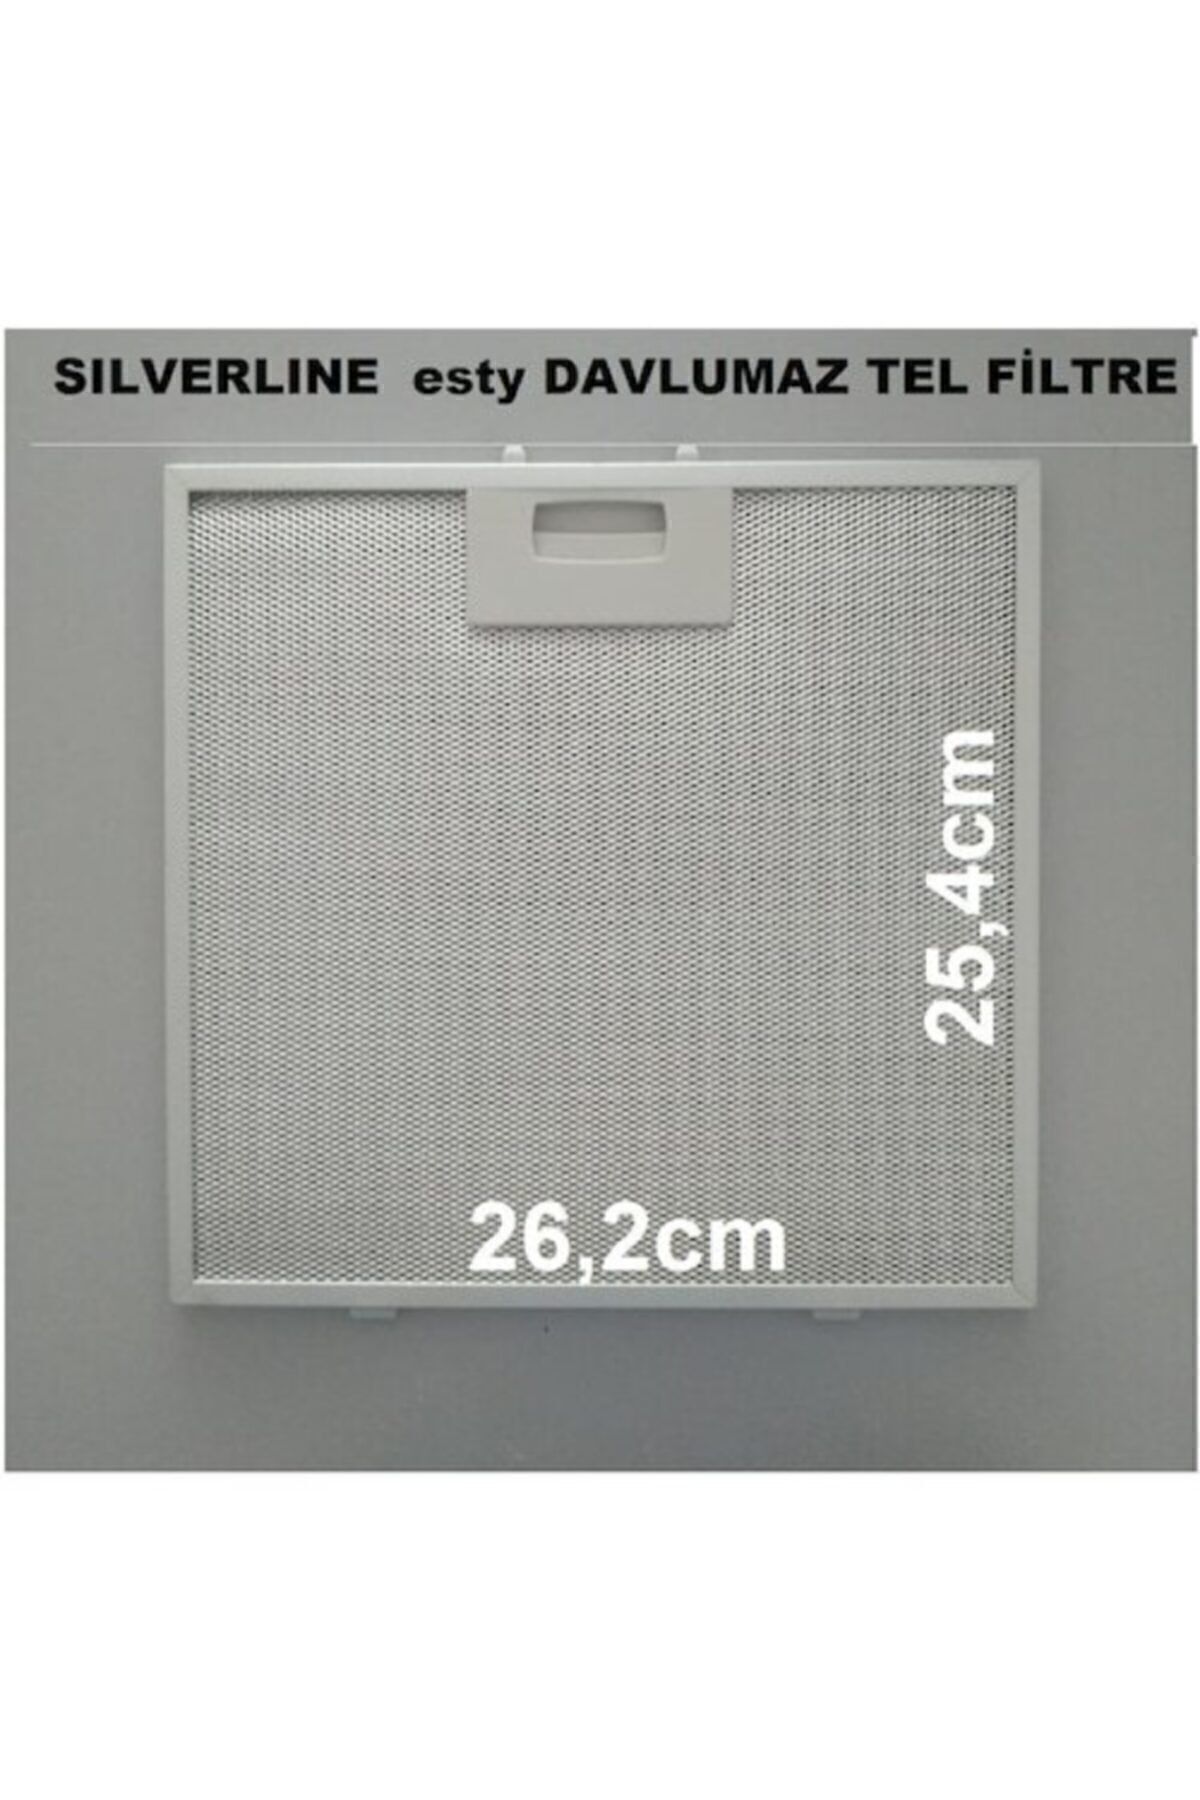 Silverline Esty 2240 60cm Davlumbaz Filtresi 2238 2241 2250